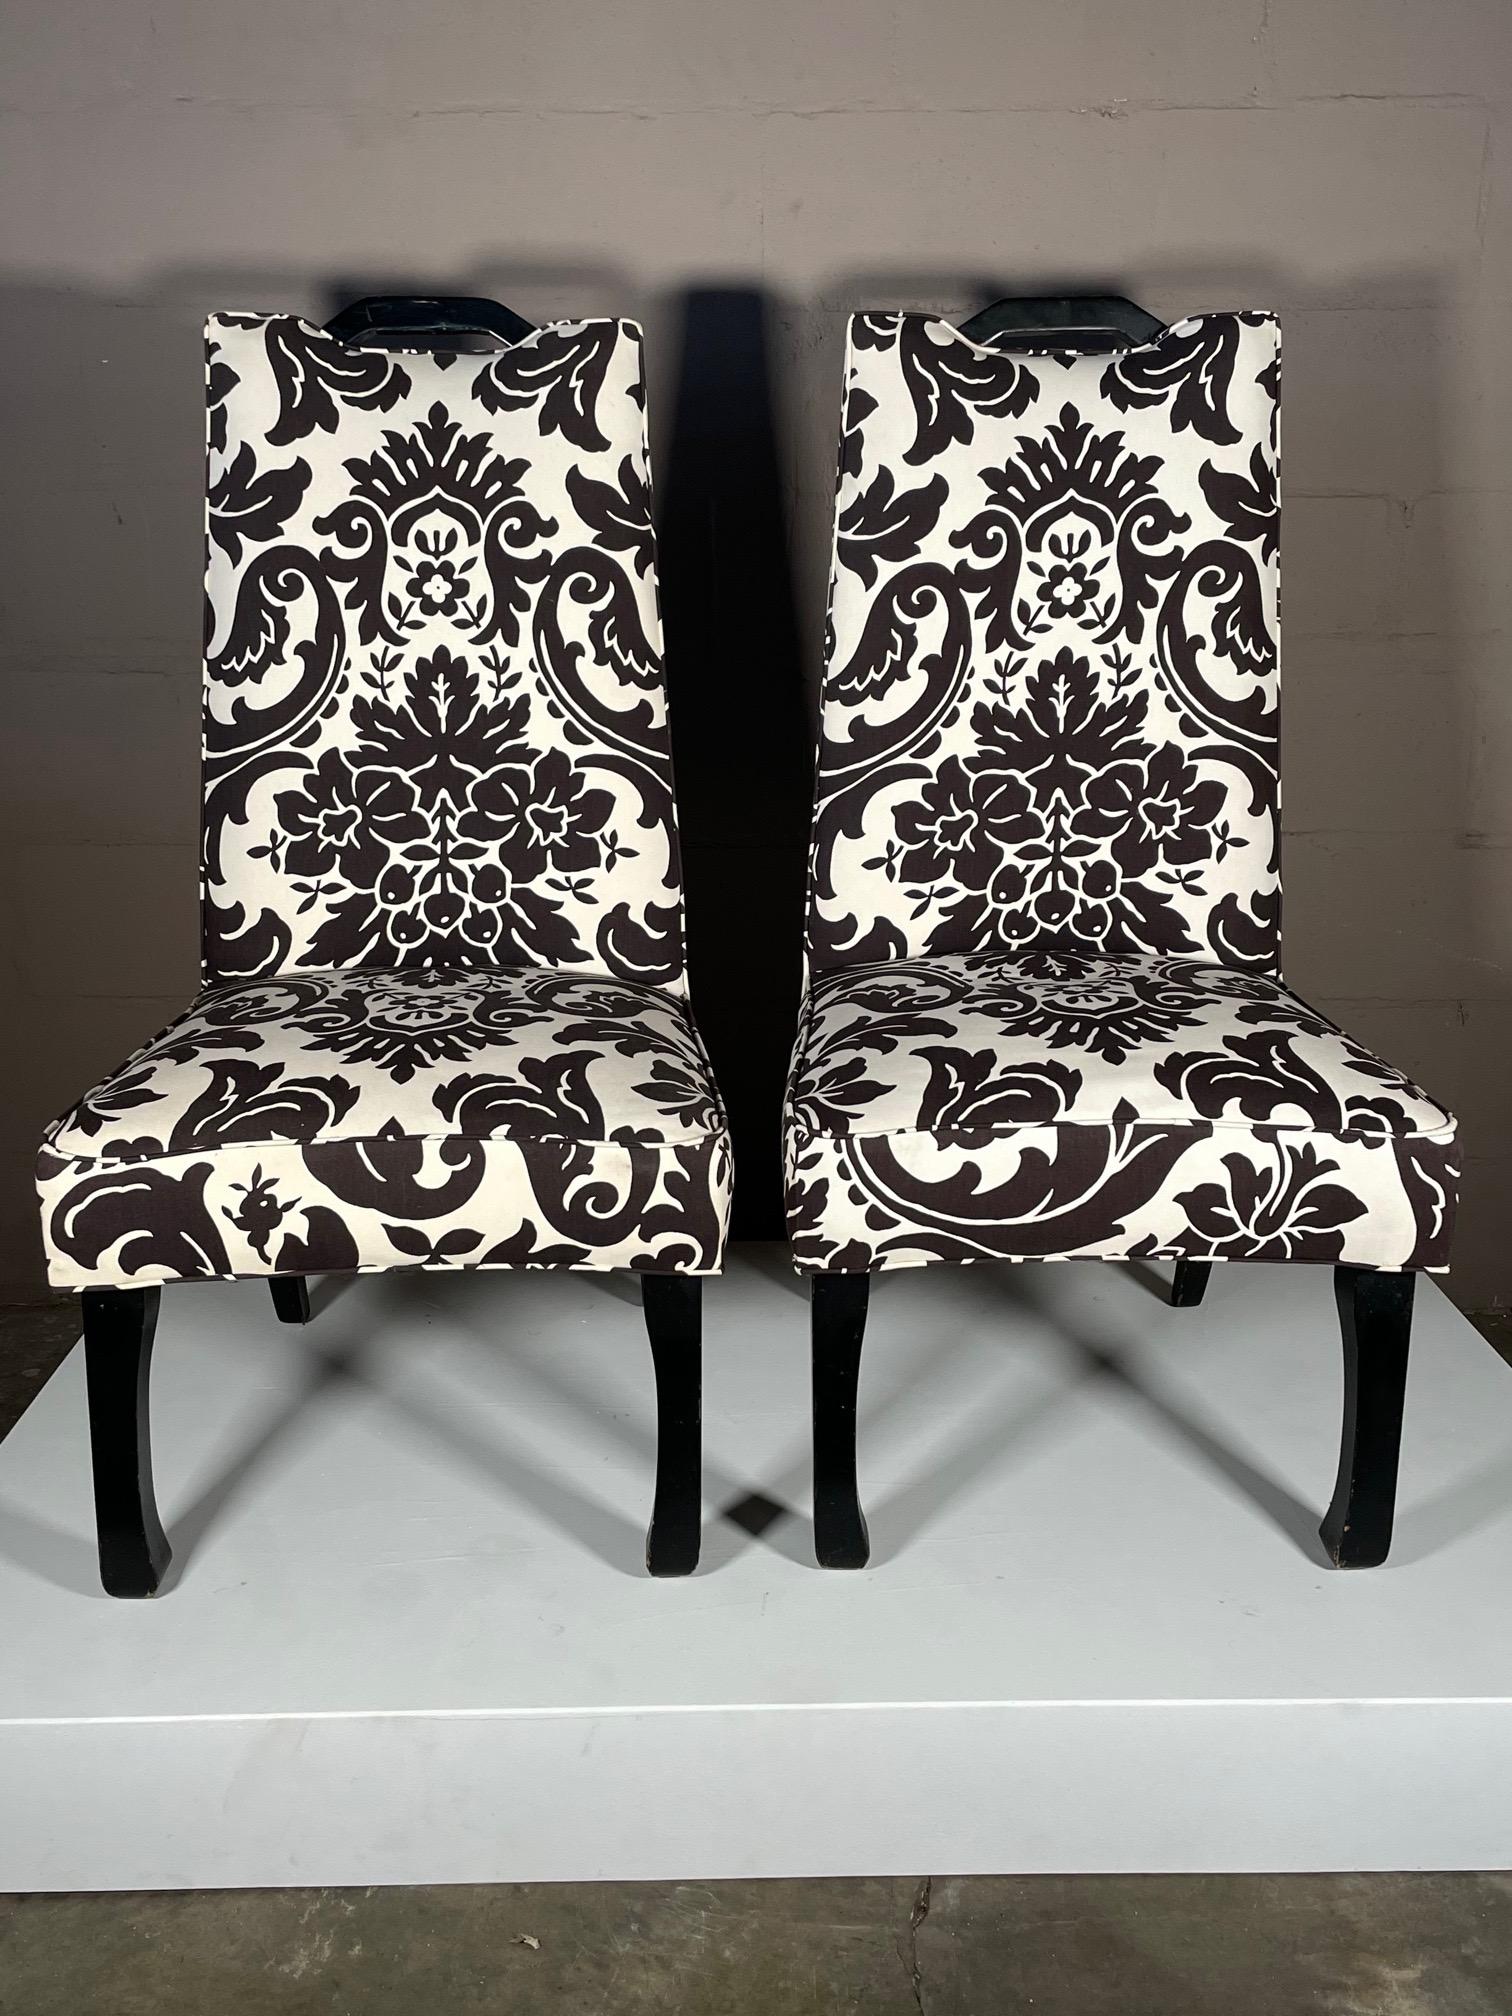 Ein Paar stilvolle Stühle mit hoher Rückenlehne im asiatischen Stil und schwarz lackierten Griffen. Gepolstert mit Baumwolle, schwarz/weißer abstrakter Druck.